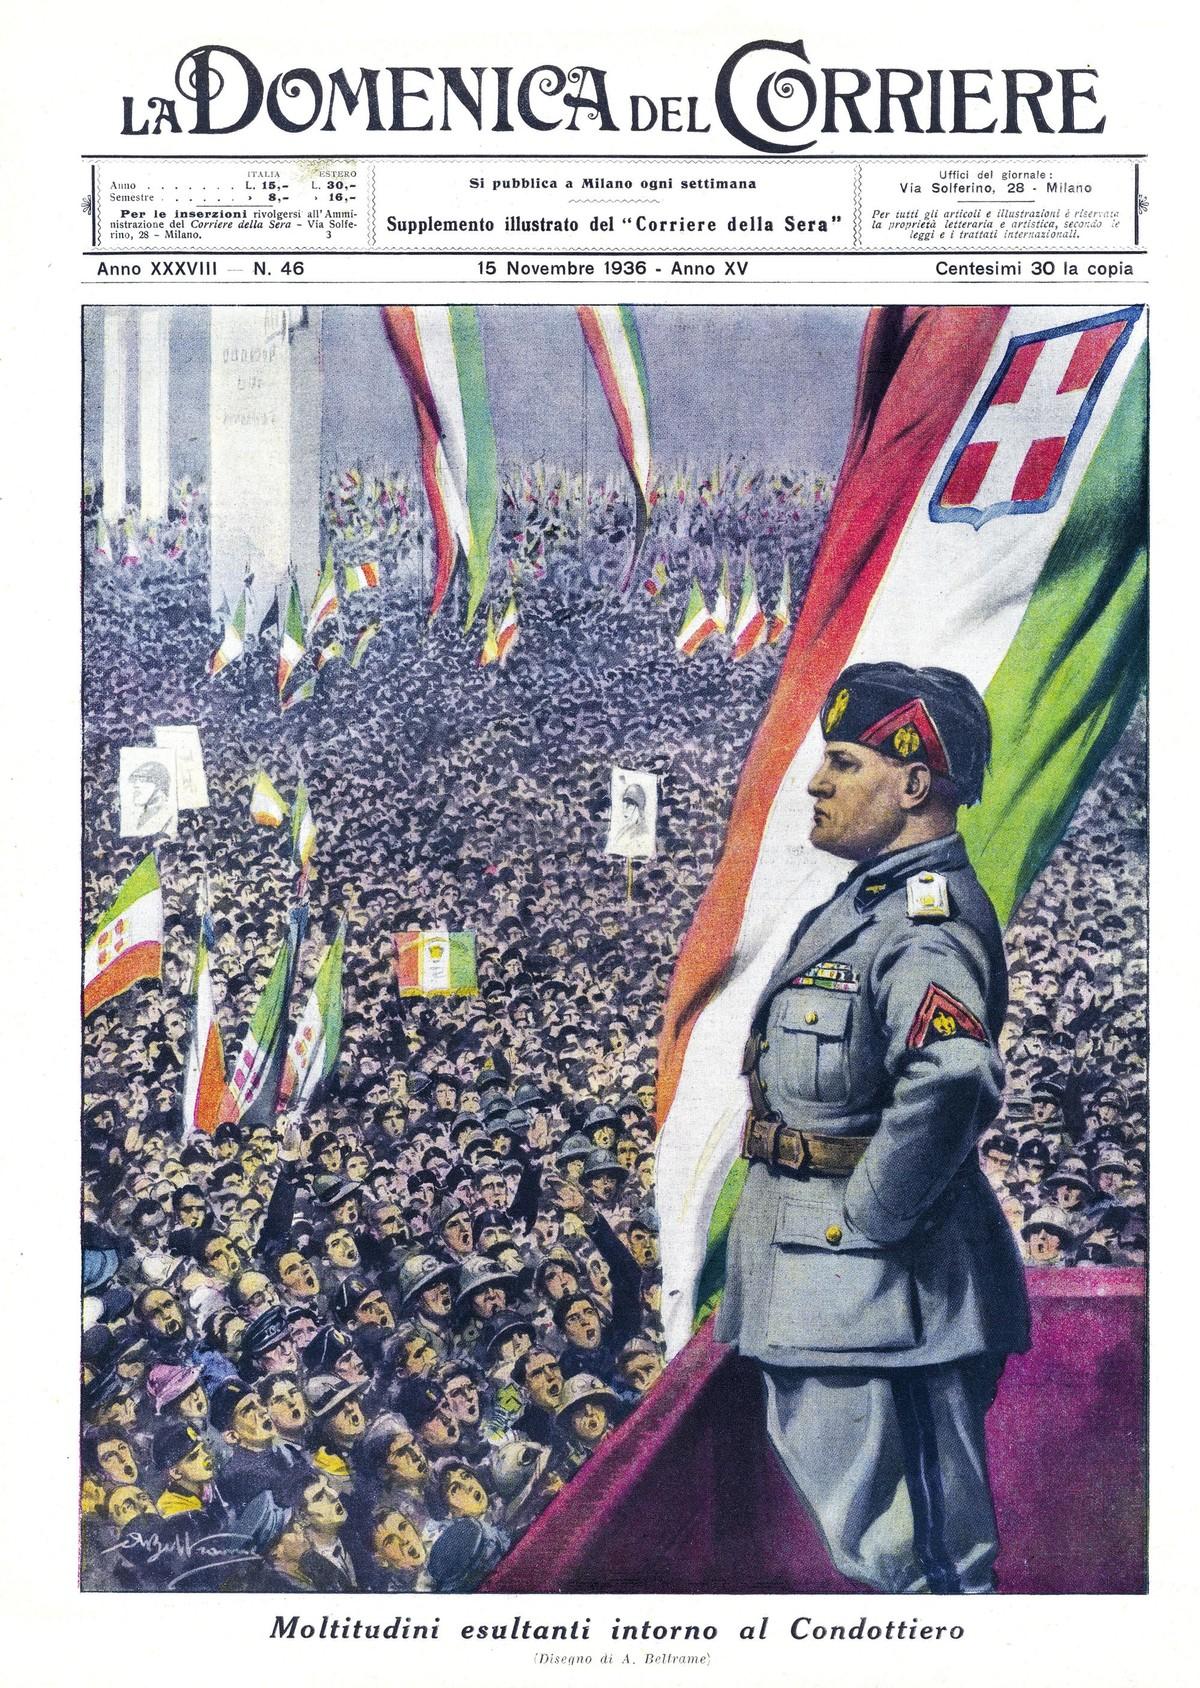 Mussolini faisant un discours à une foule - Une de La Domenica del Corriere, 16 novembre 1936